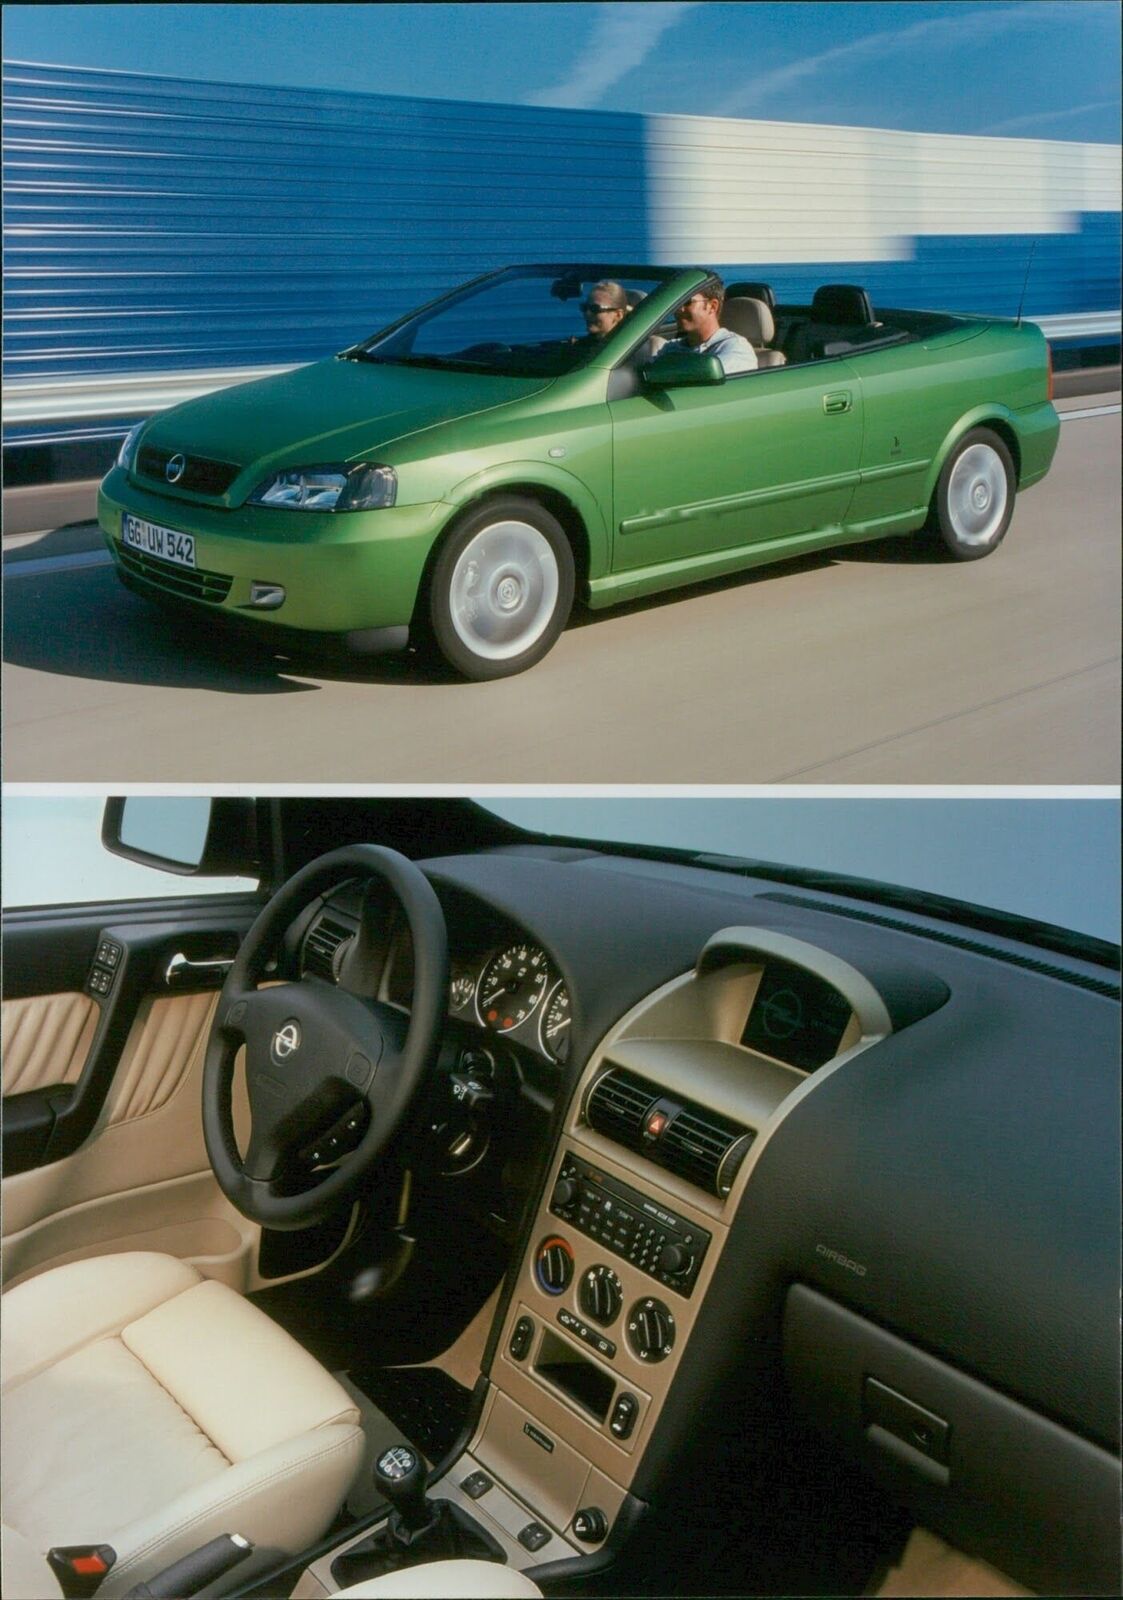 2001 Opel Astra Cabrio - Vintage Photograph 3361165